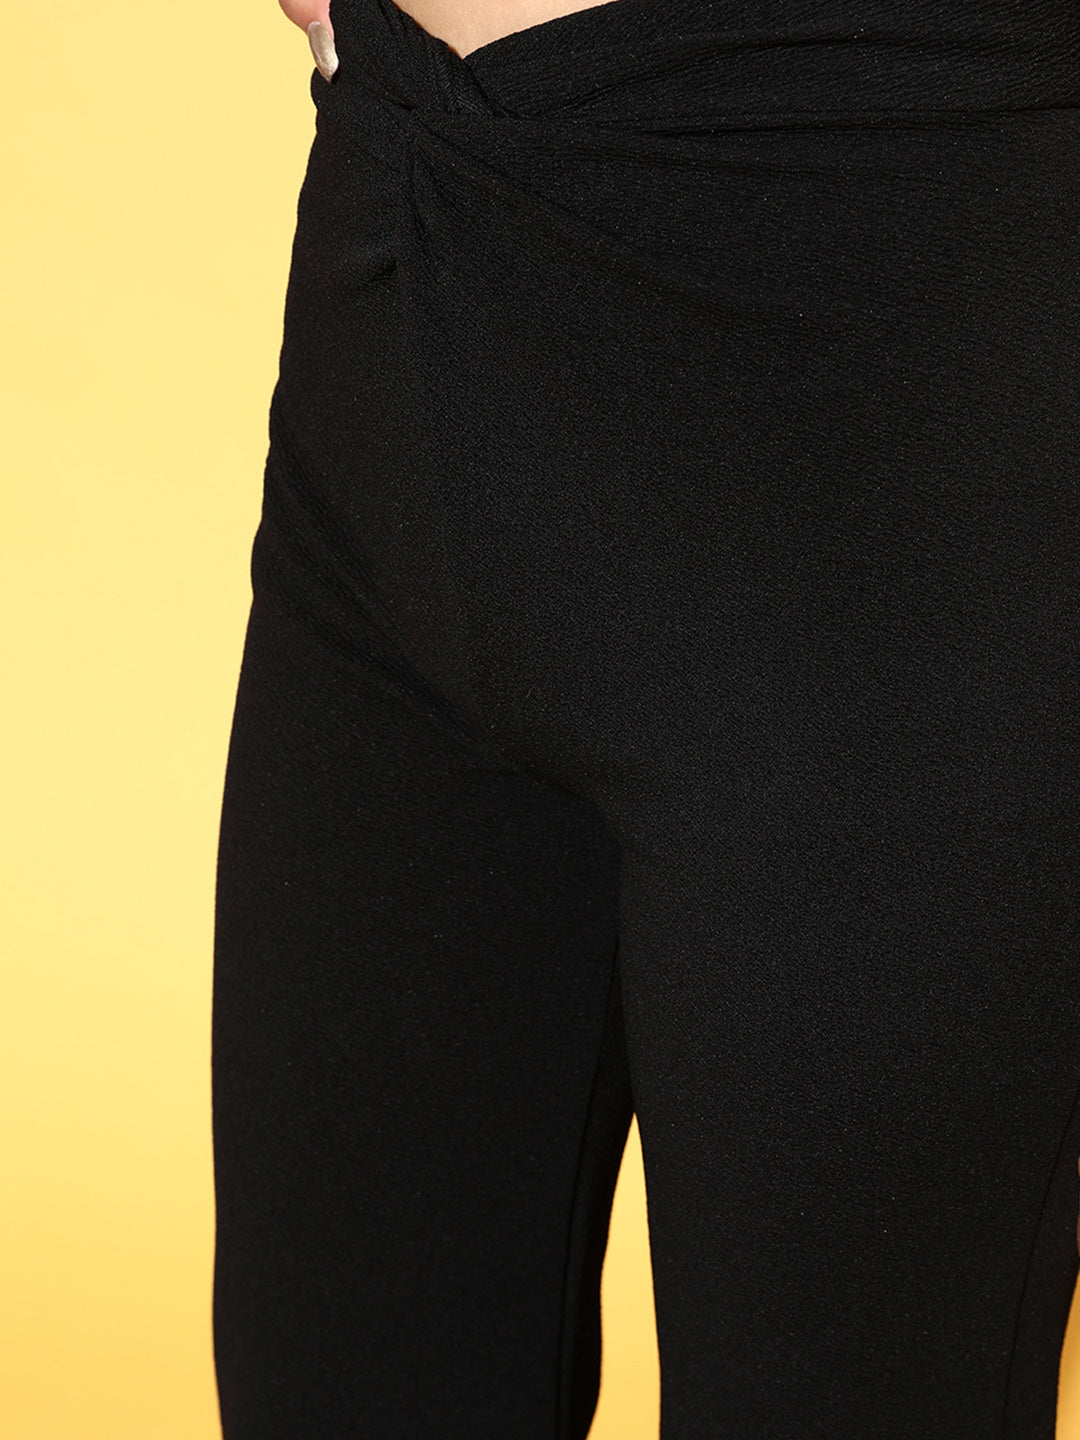 Buy Women Black Twisted Bell Bottom Pants Online at Sassafras